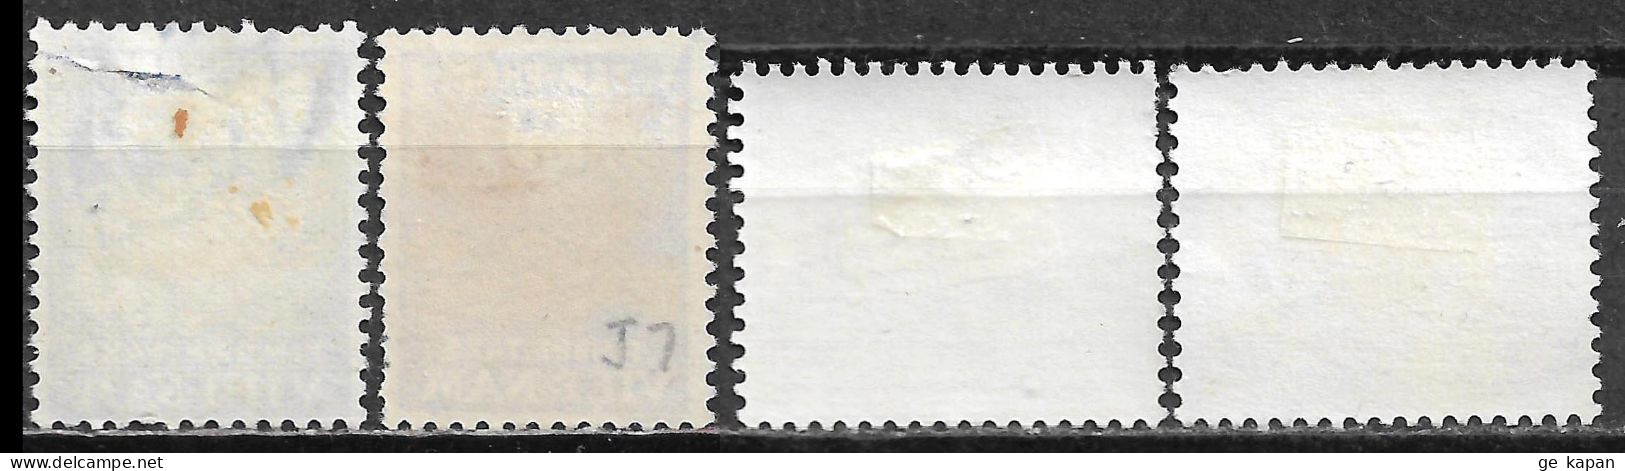 1952-1968 SOUTH VIETNAM POSTAGE DUE Used/Unused Stamps (Scott # J6,J7,J15,J16) CV $6.00 - Vietnam